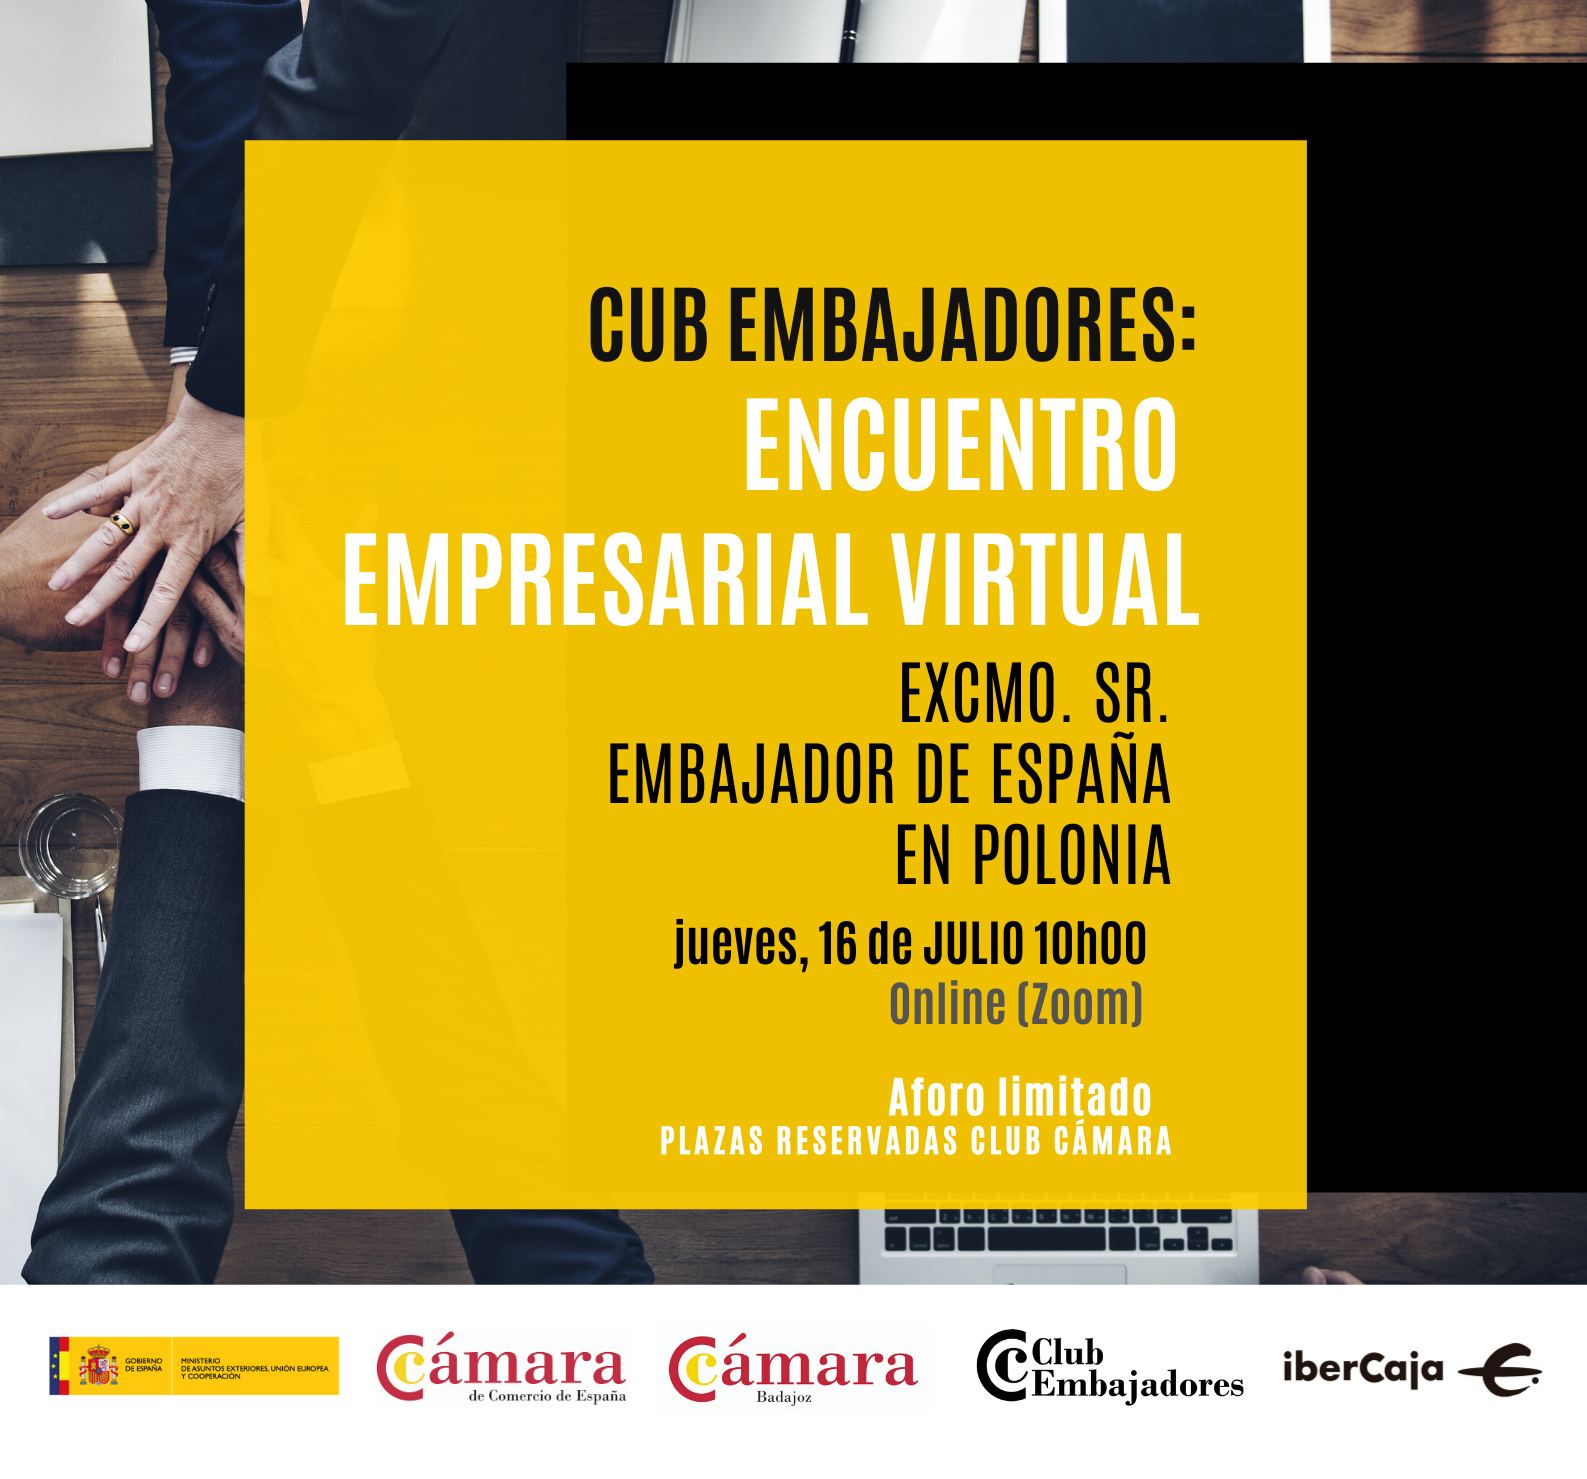 Club Embajadores: ENCUENTRO EMPRESARIAL VIRTUAL- Excmo. Sr.D. Francisco Javier Sanabria Valderrama